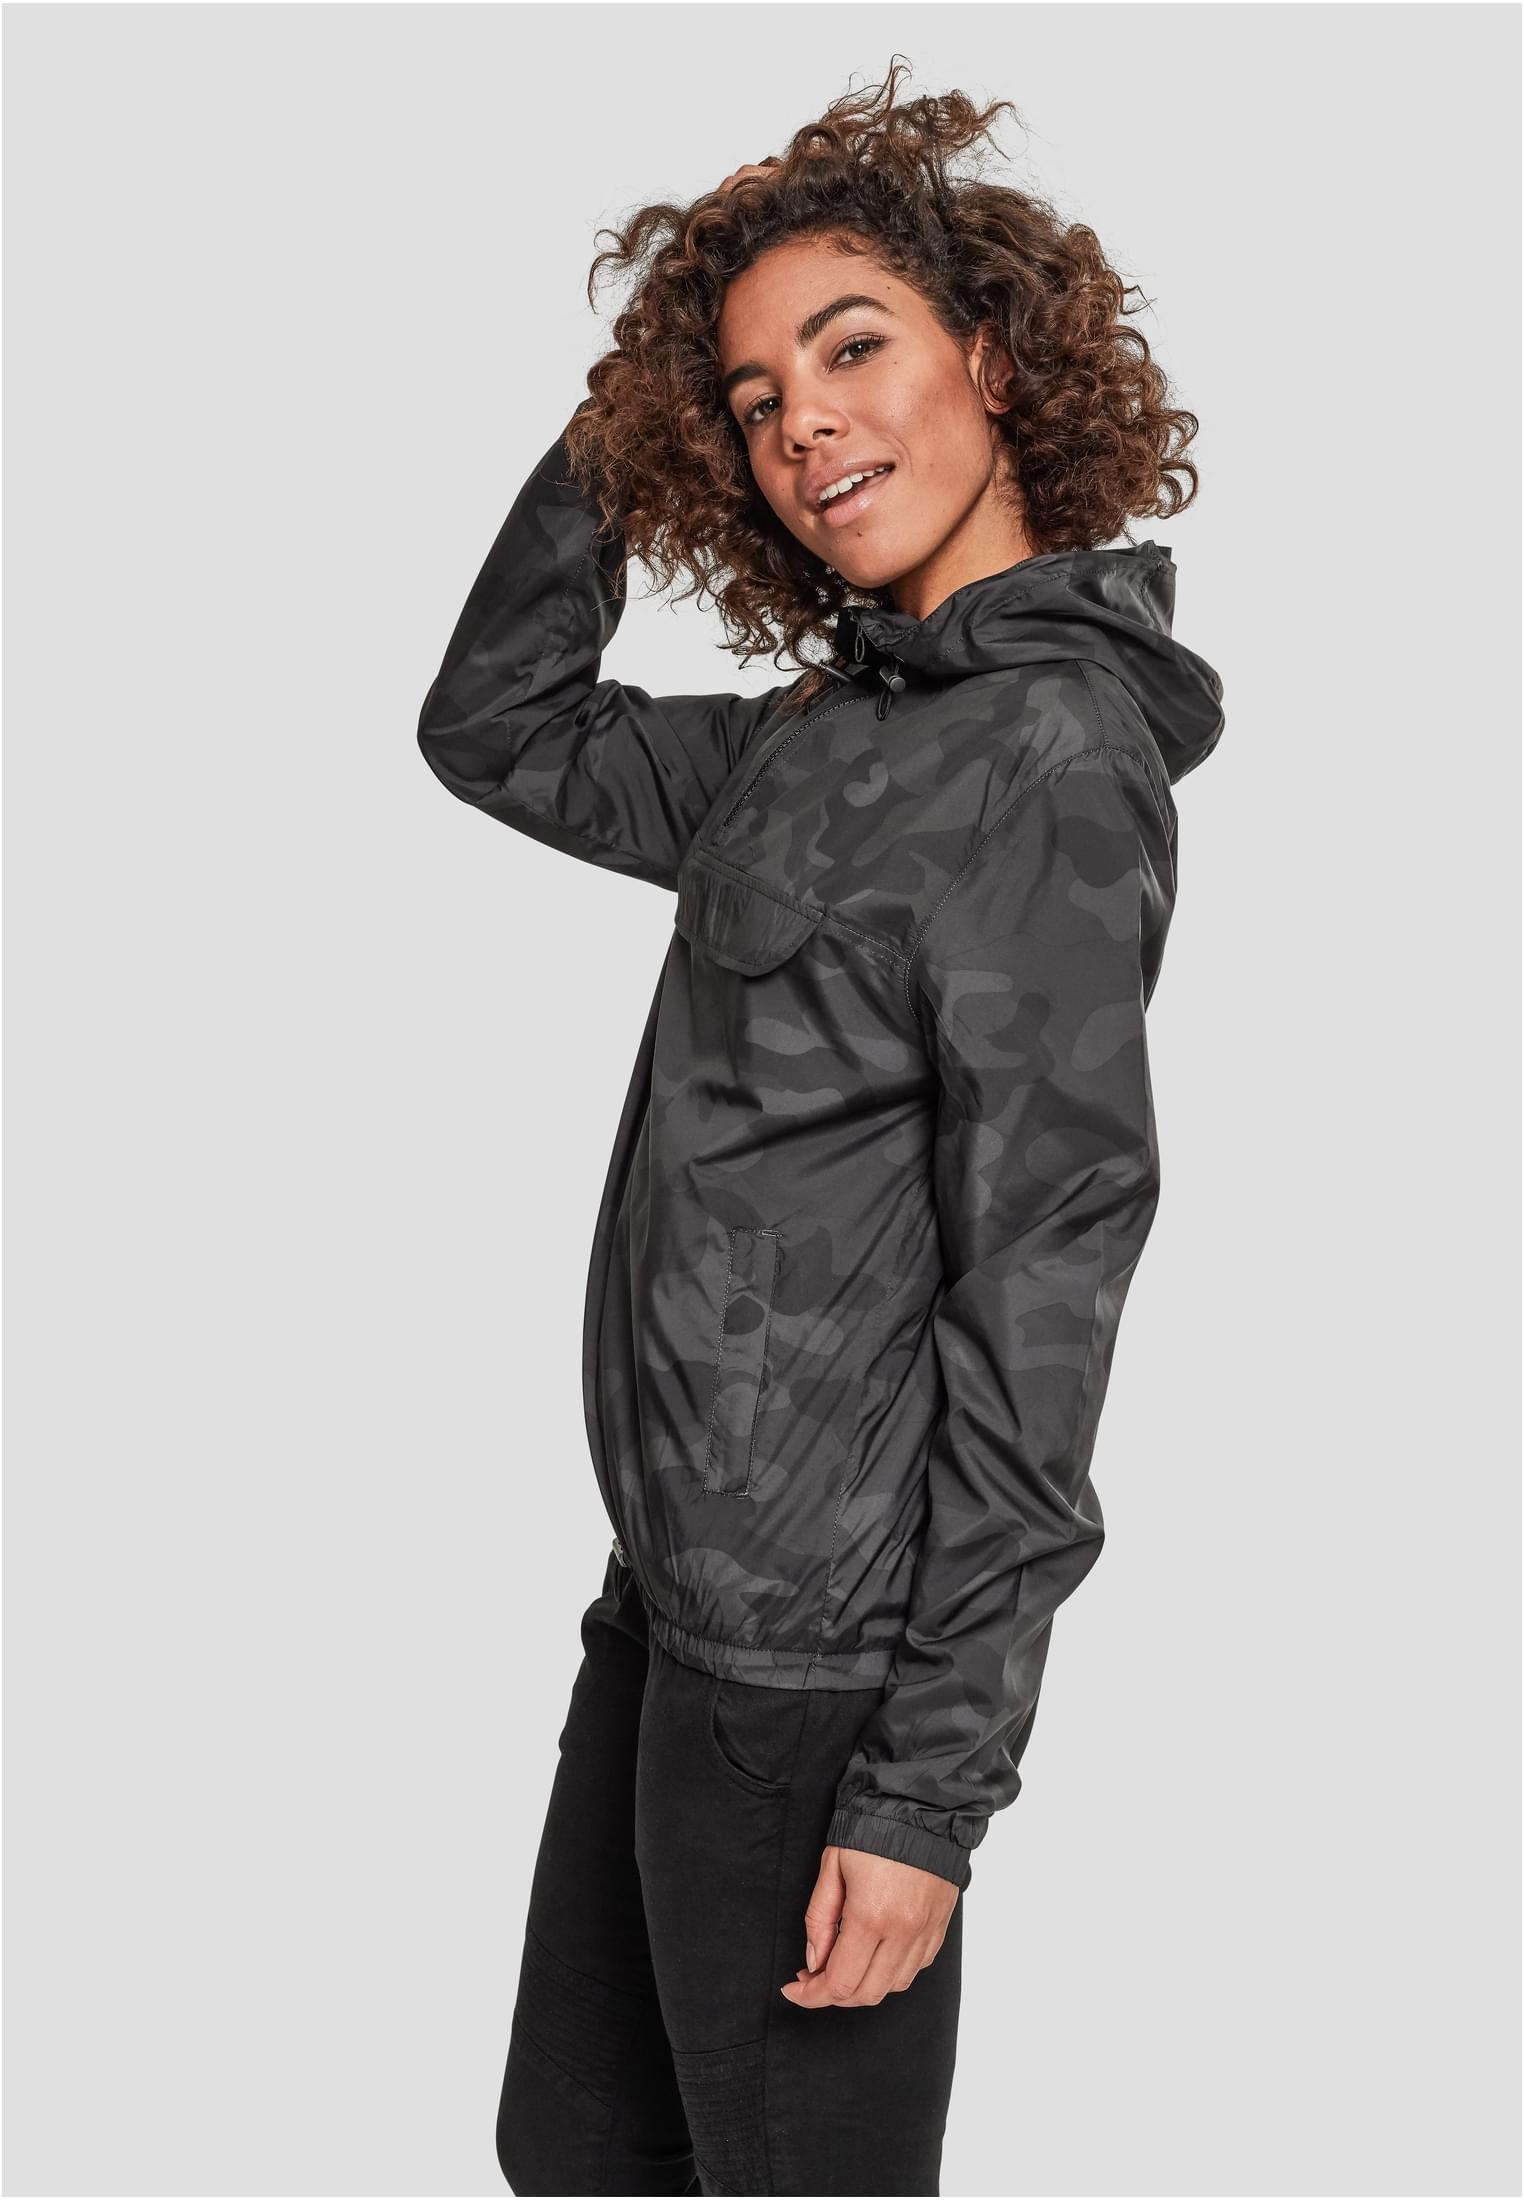 URBAN CLASSICS Outdoorjacke Camo BAUR kaufen (1 | Ladies St.) Pull Over »Damen Jacket«, für